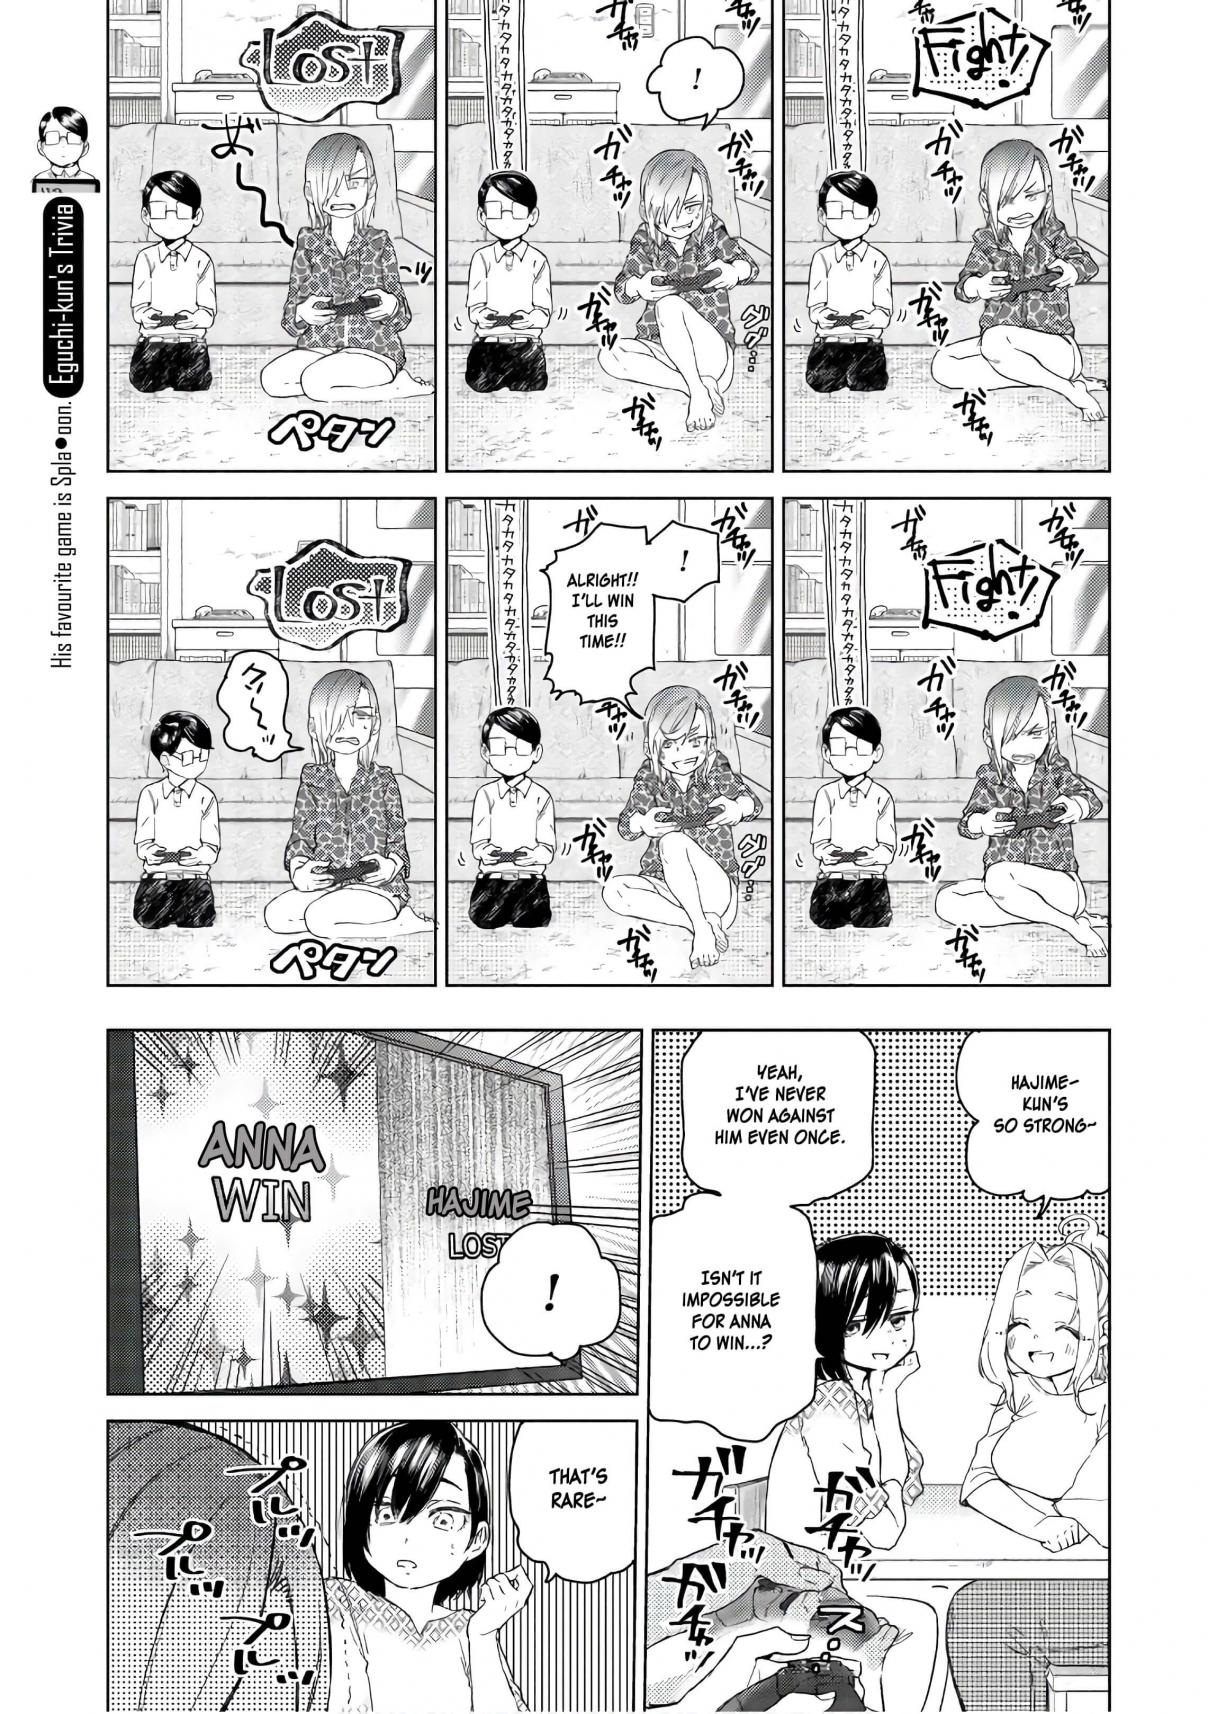 Eguchi kun Doesn't Miss a Thing Vol. 3 Ch. 14 Eguchi And JK